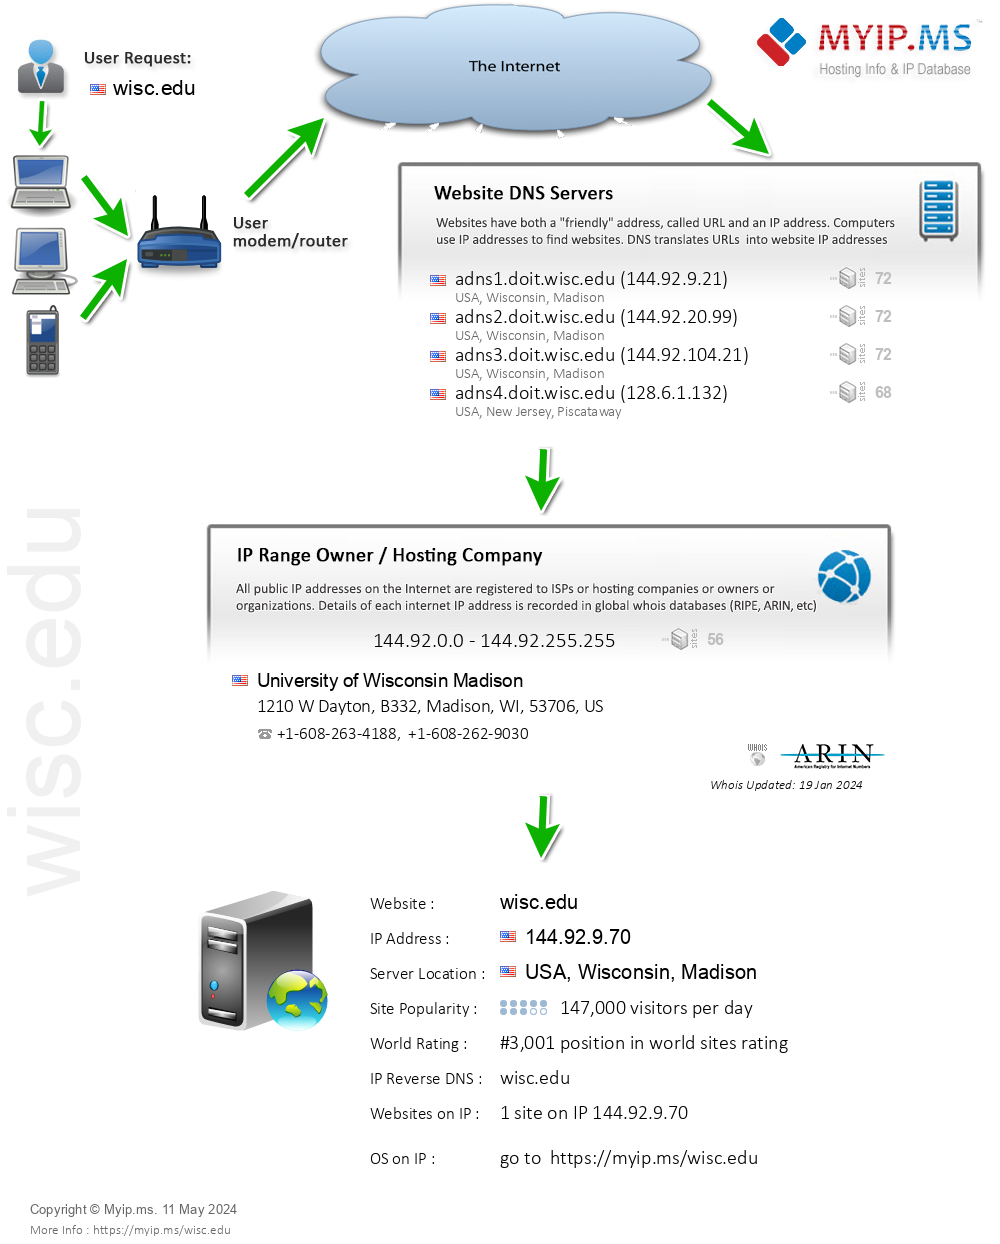 Wisc.edu - Website Hosting Visual IP Diagram